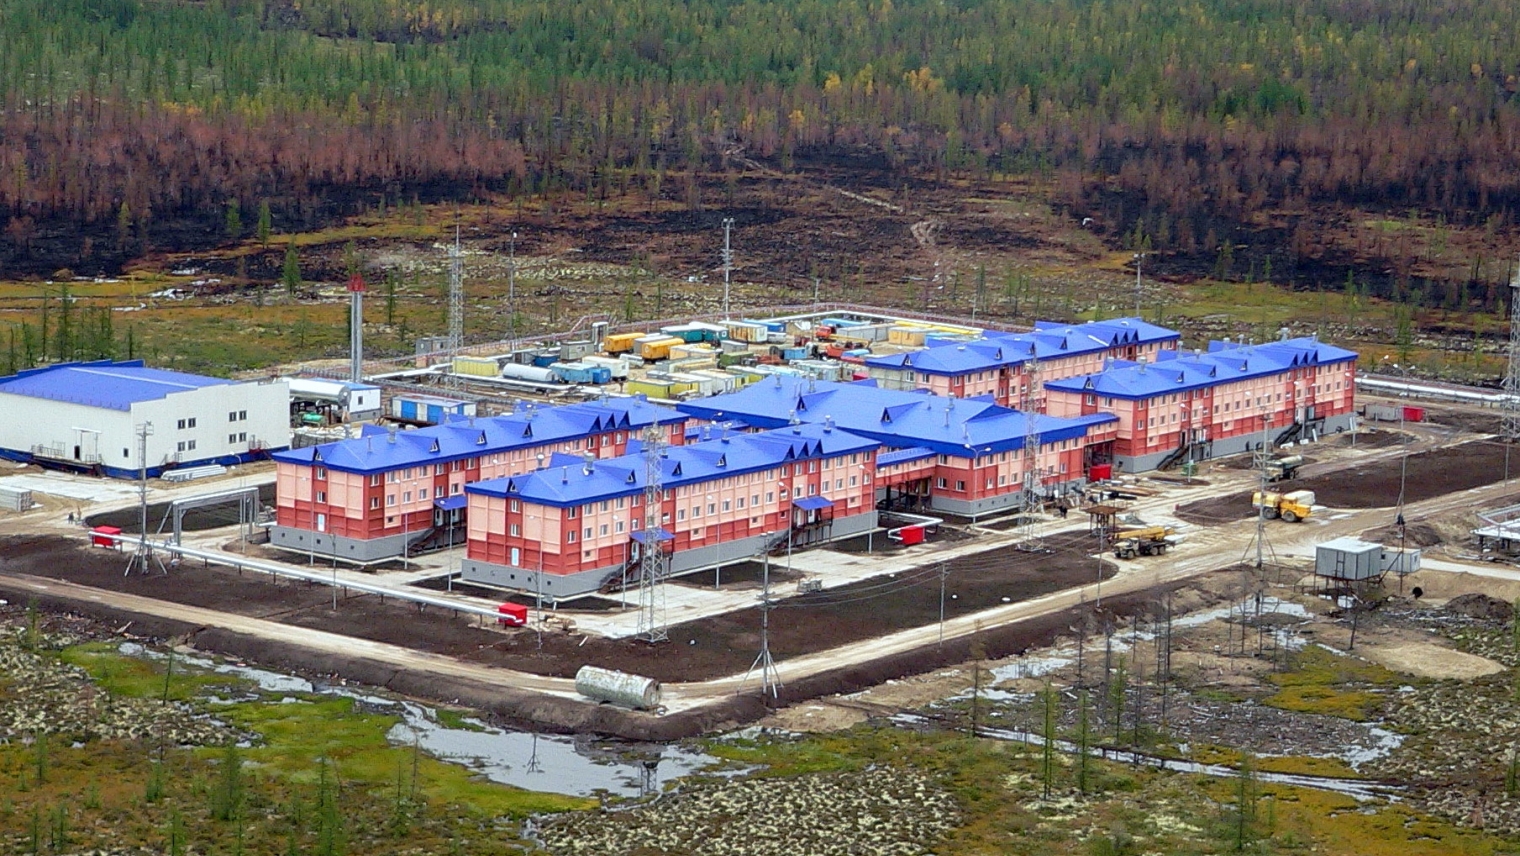 Газпром добыча Ямбург построит комплекс общежитий на Заполярном месторождении. Проектирование дополнительных мест проживания для вахтовиков